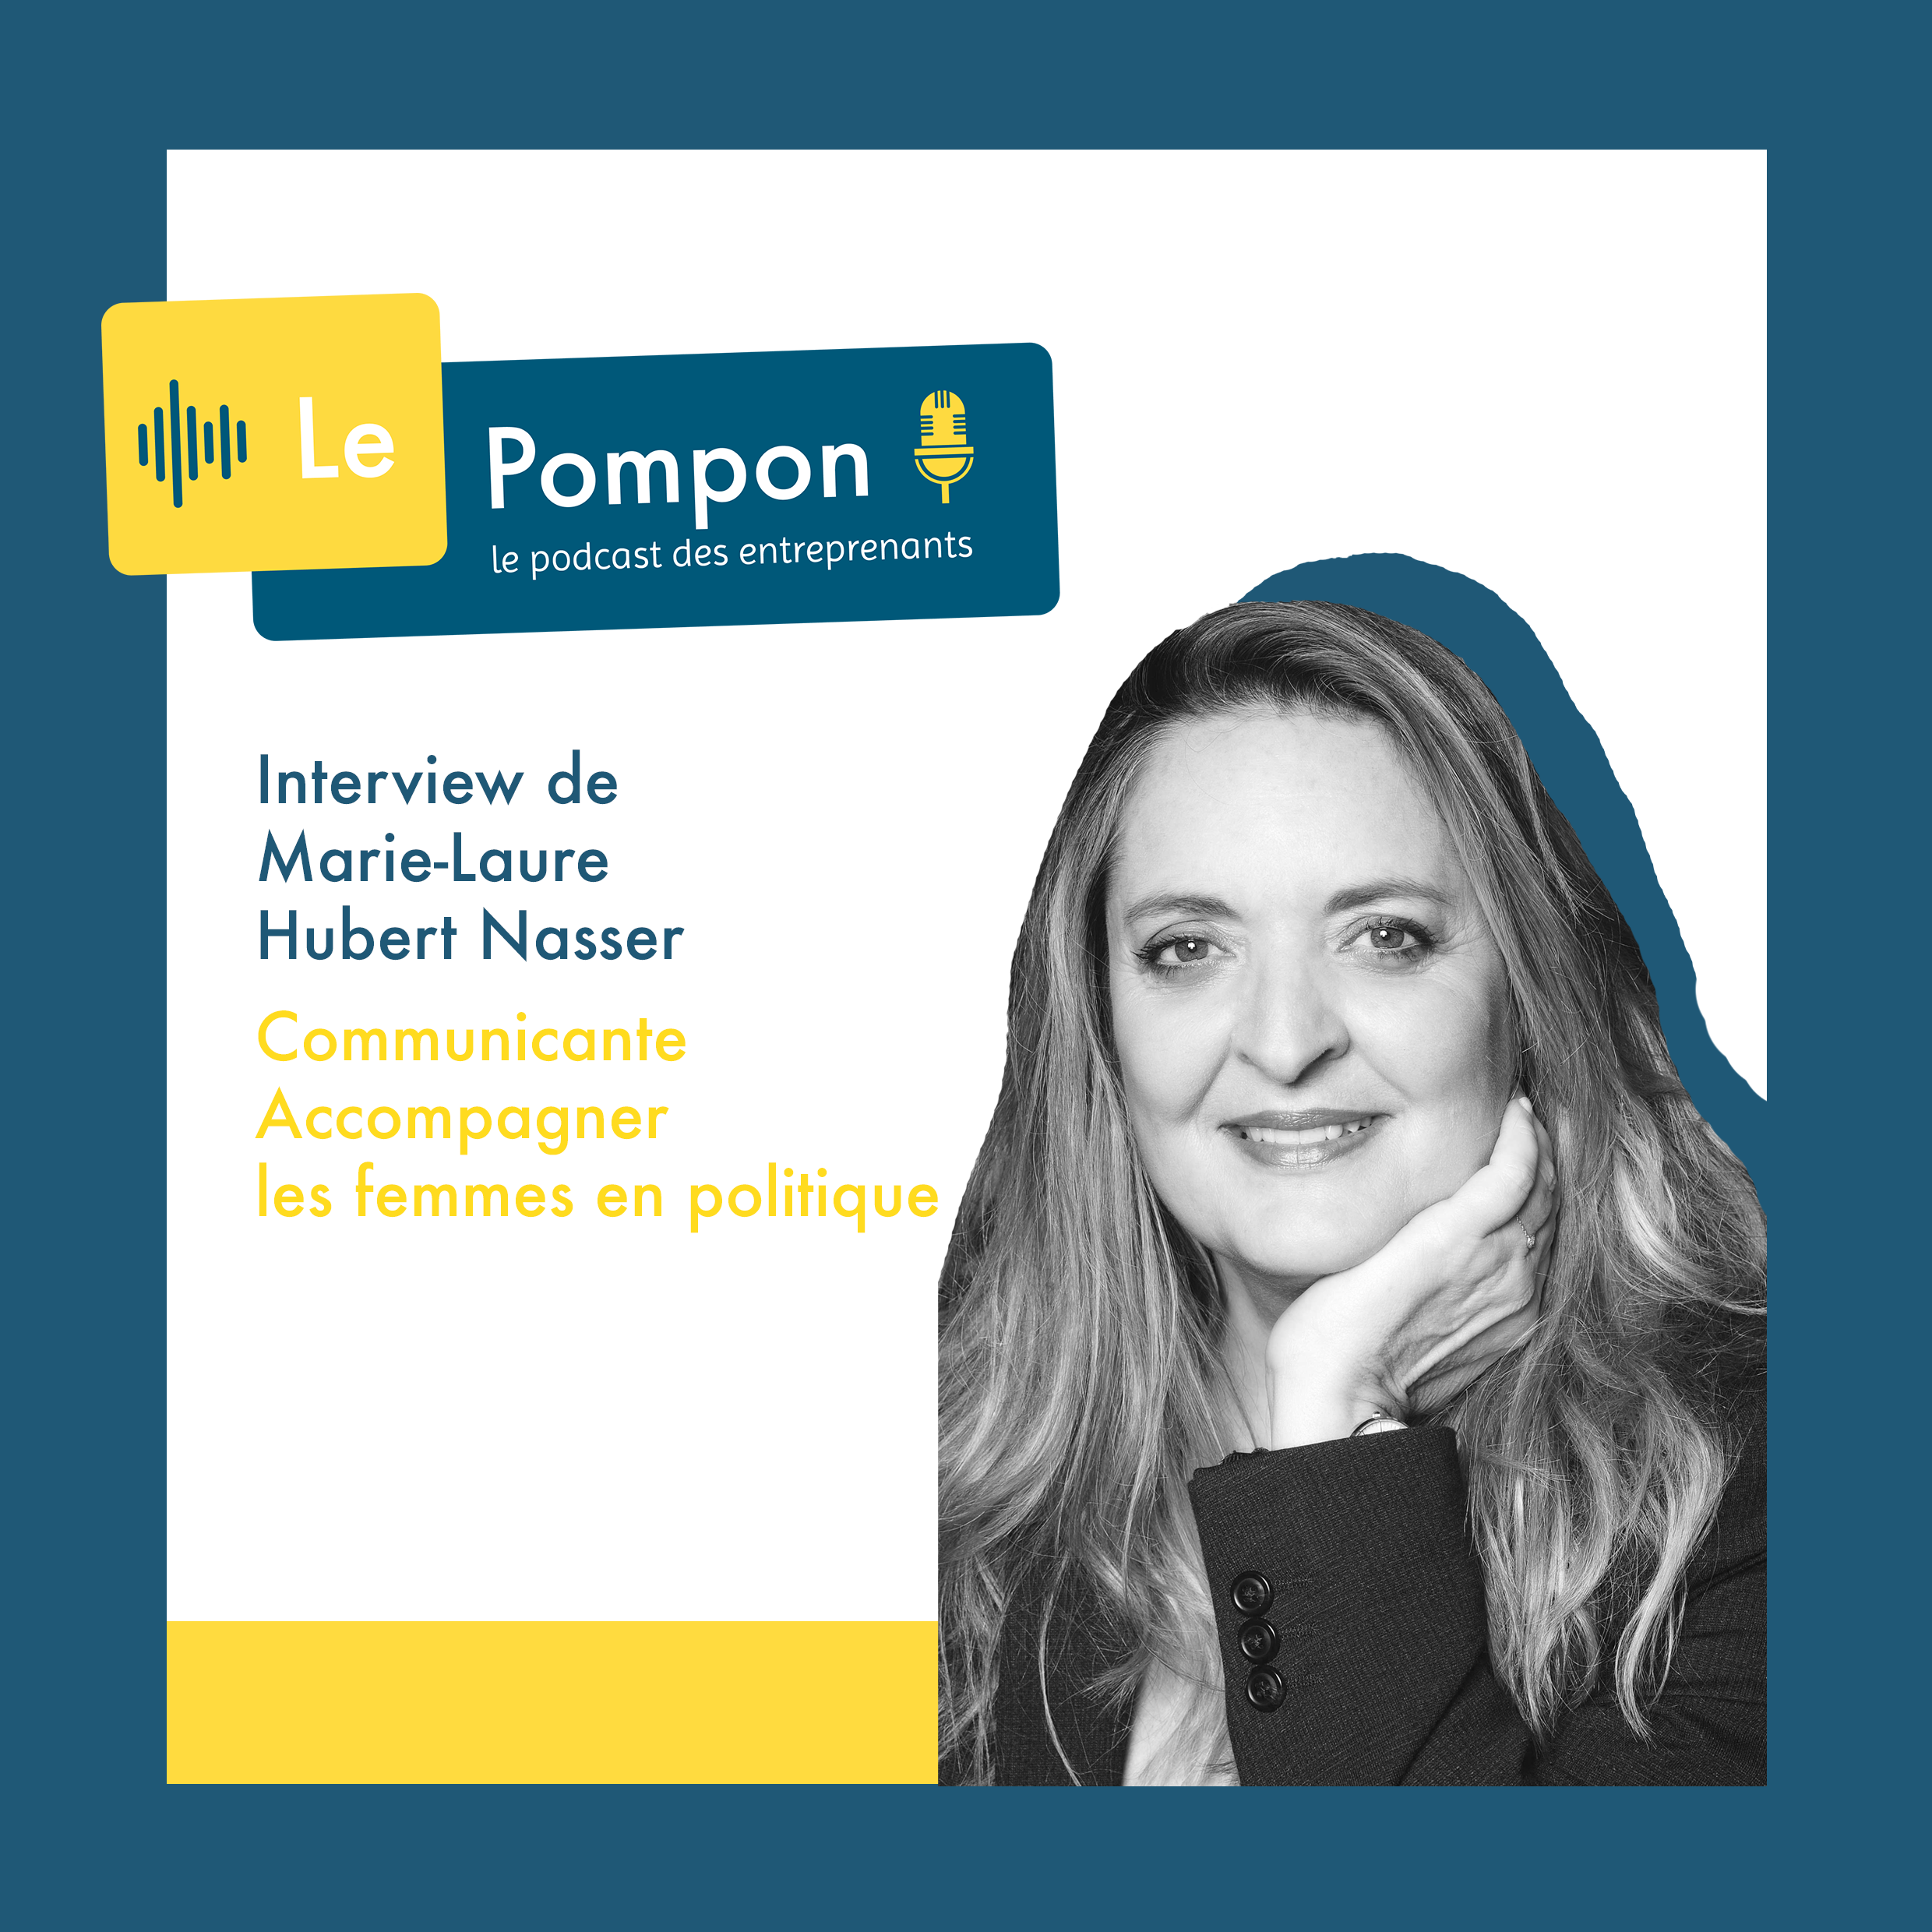 Illustration de l'épisode 43 du Podcast Le Pompon : Marie-Laure Hubert Nasser, Communicante